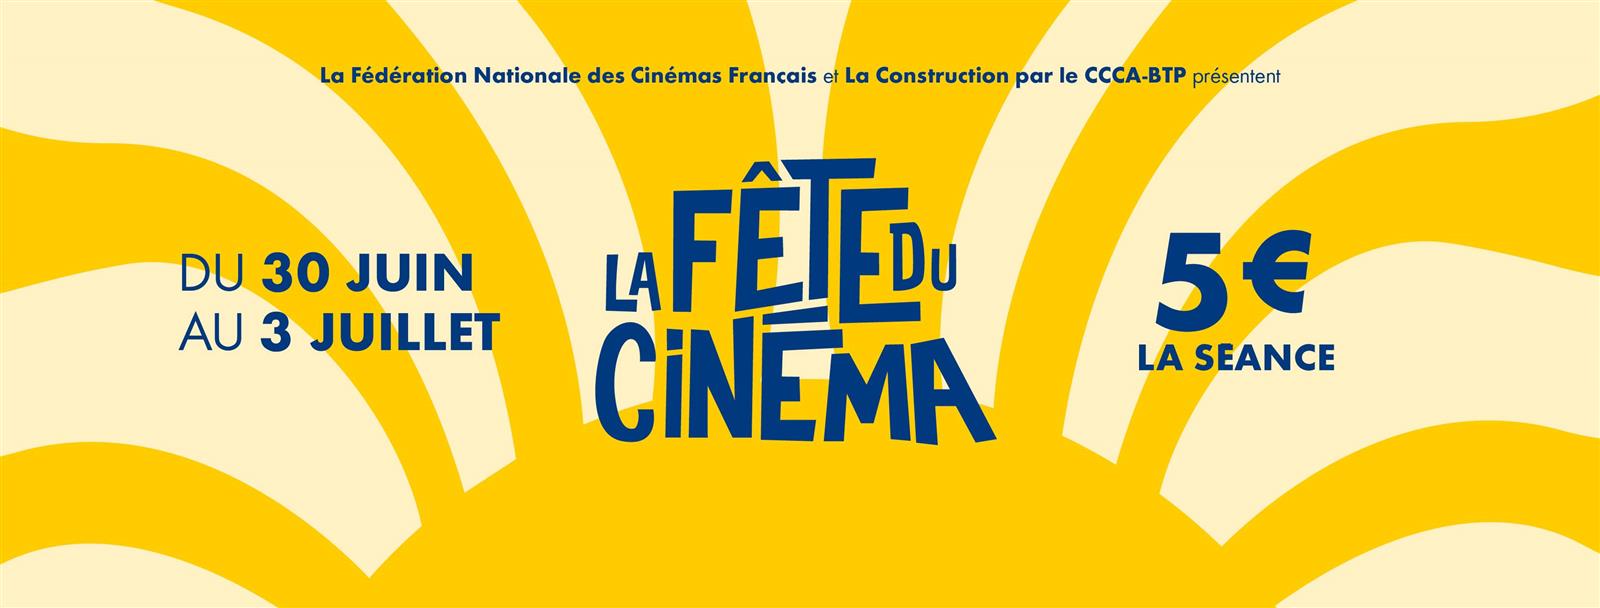 ANNULEE : Cinéma : Bad boy ride or die - Fête  ...